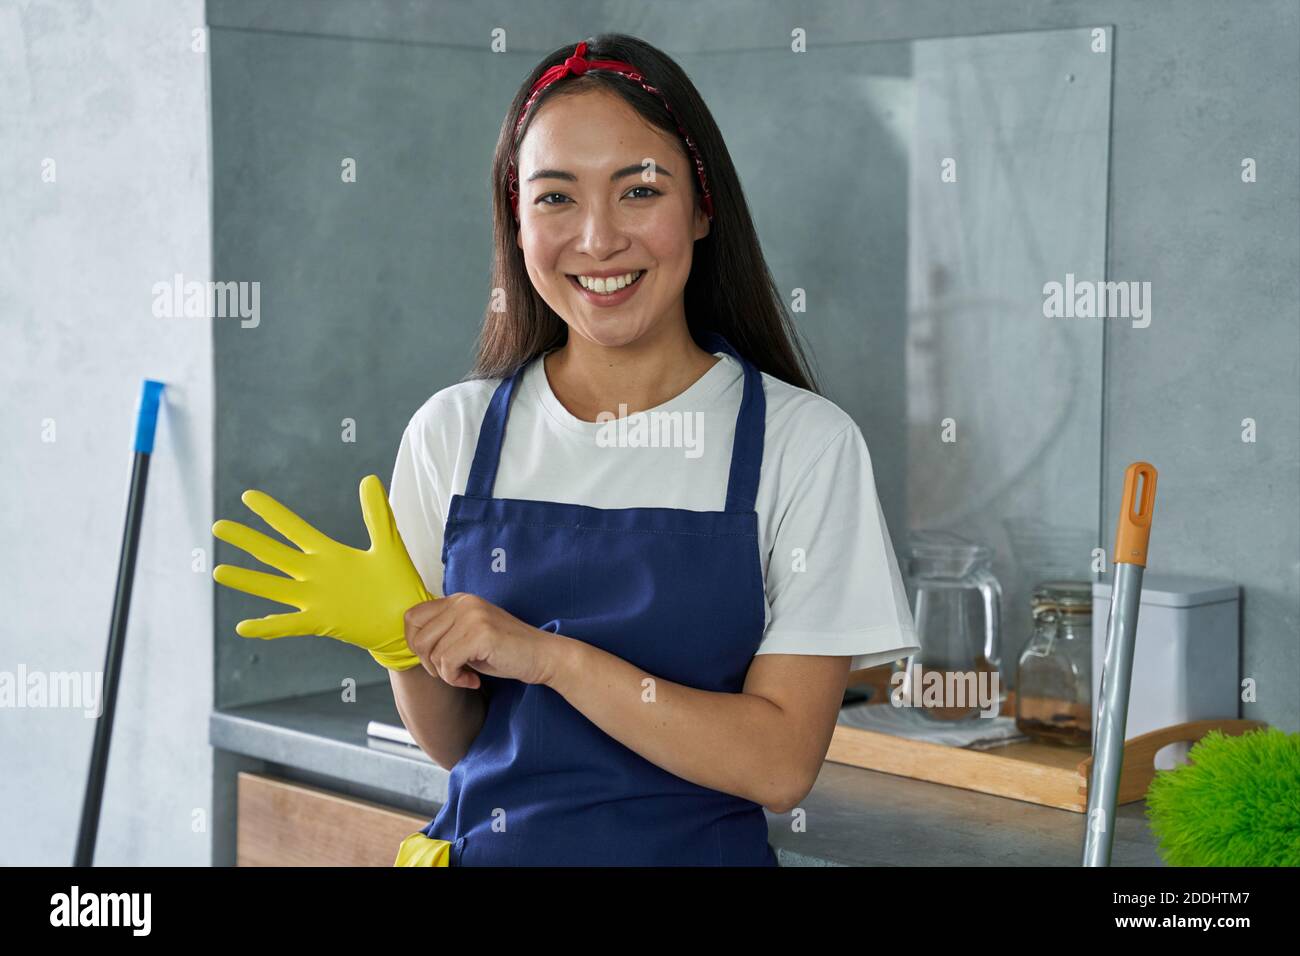 Retrato de una joven alegre, señora de la limpieza sonriendo en la cámara, usando guantes protectores mientras se prepara para limpiar la casa. Las tareas domésticas y el servicio de limpieza, concepto de servicio de limpieza Foto de stock